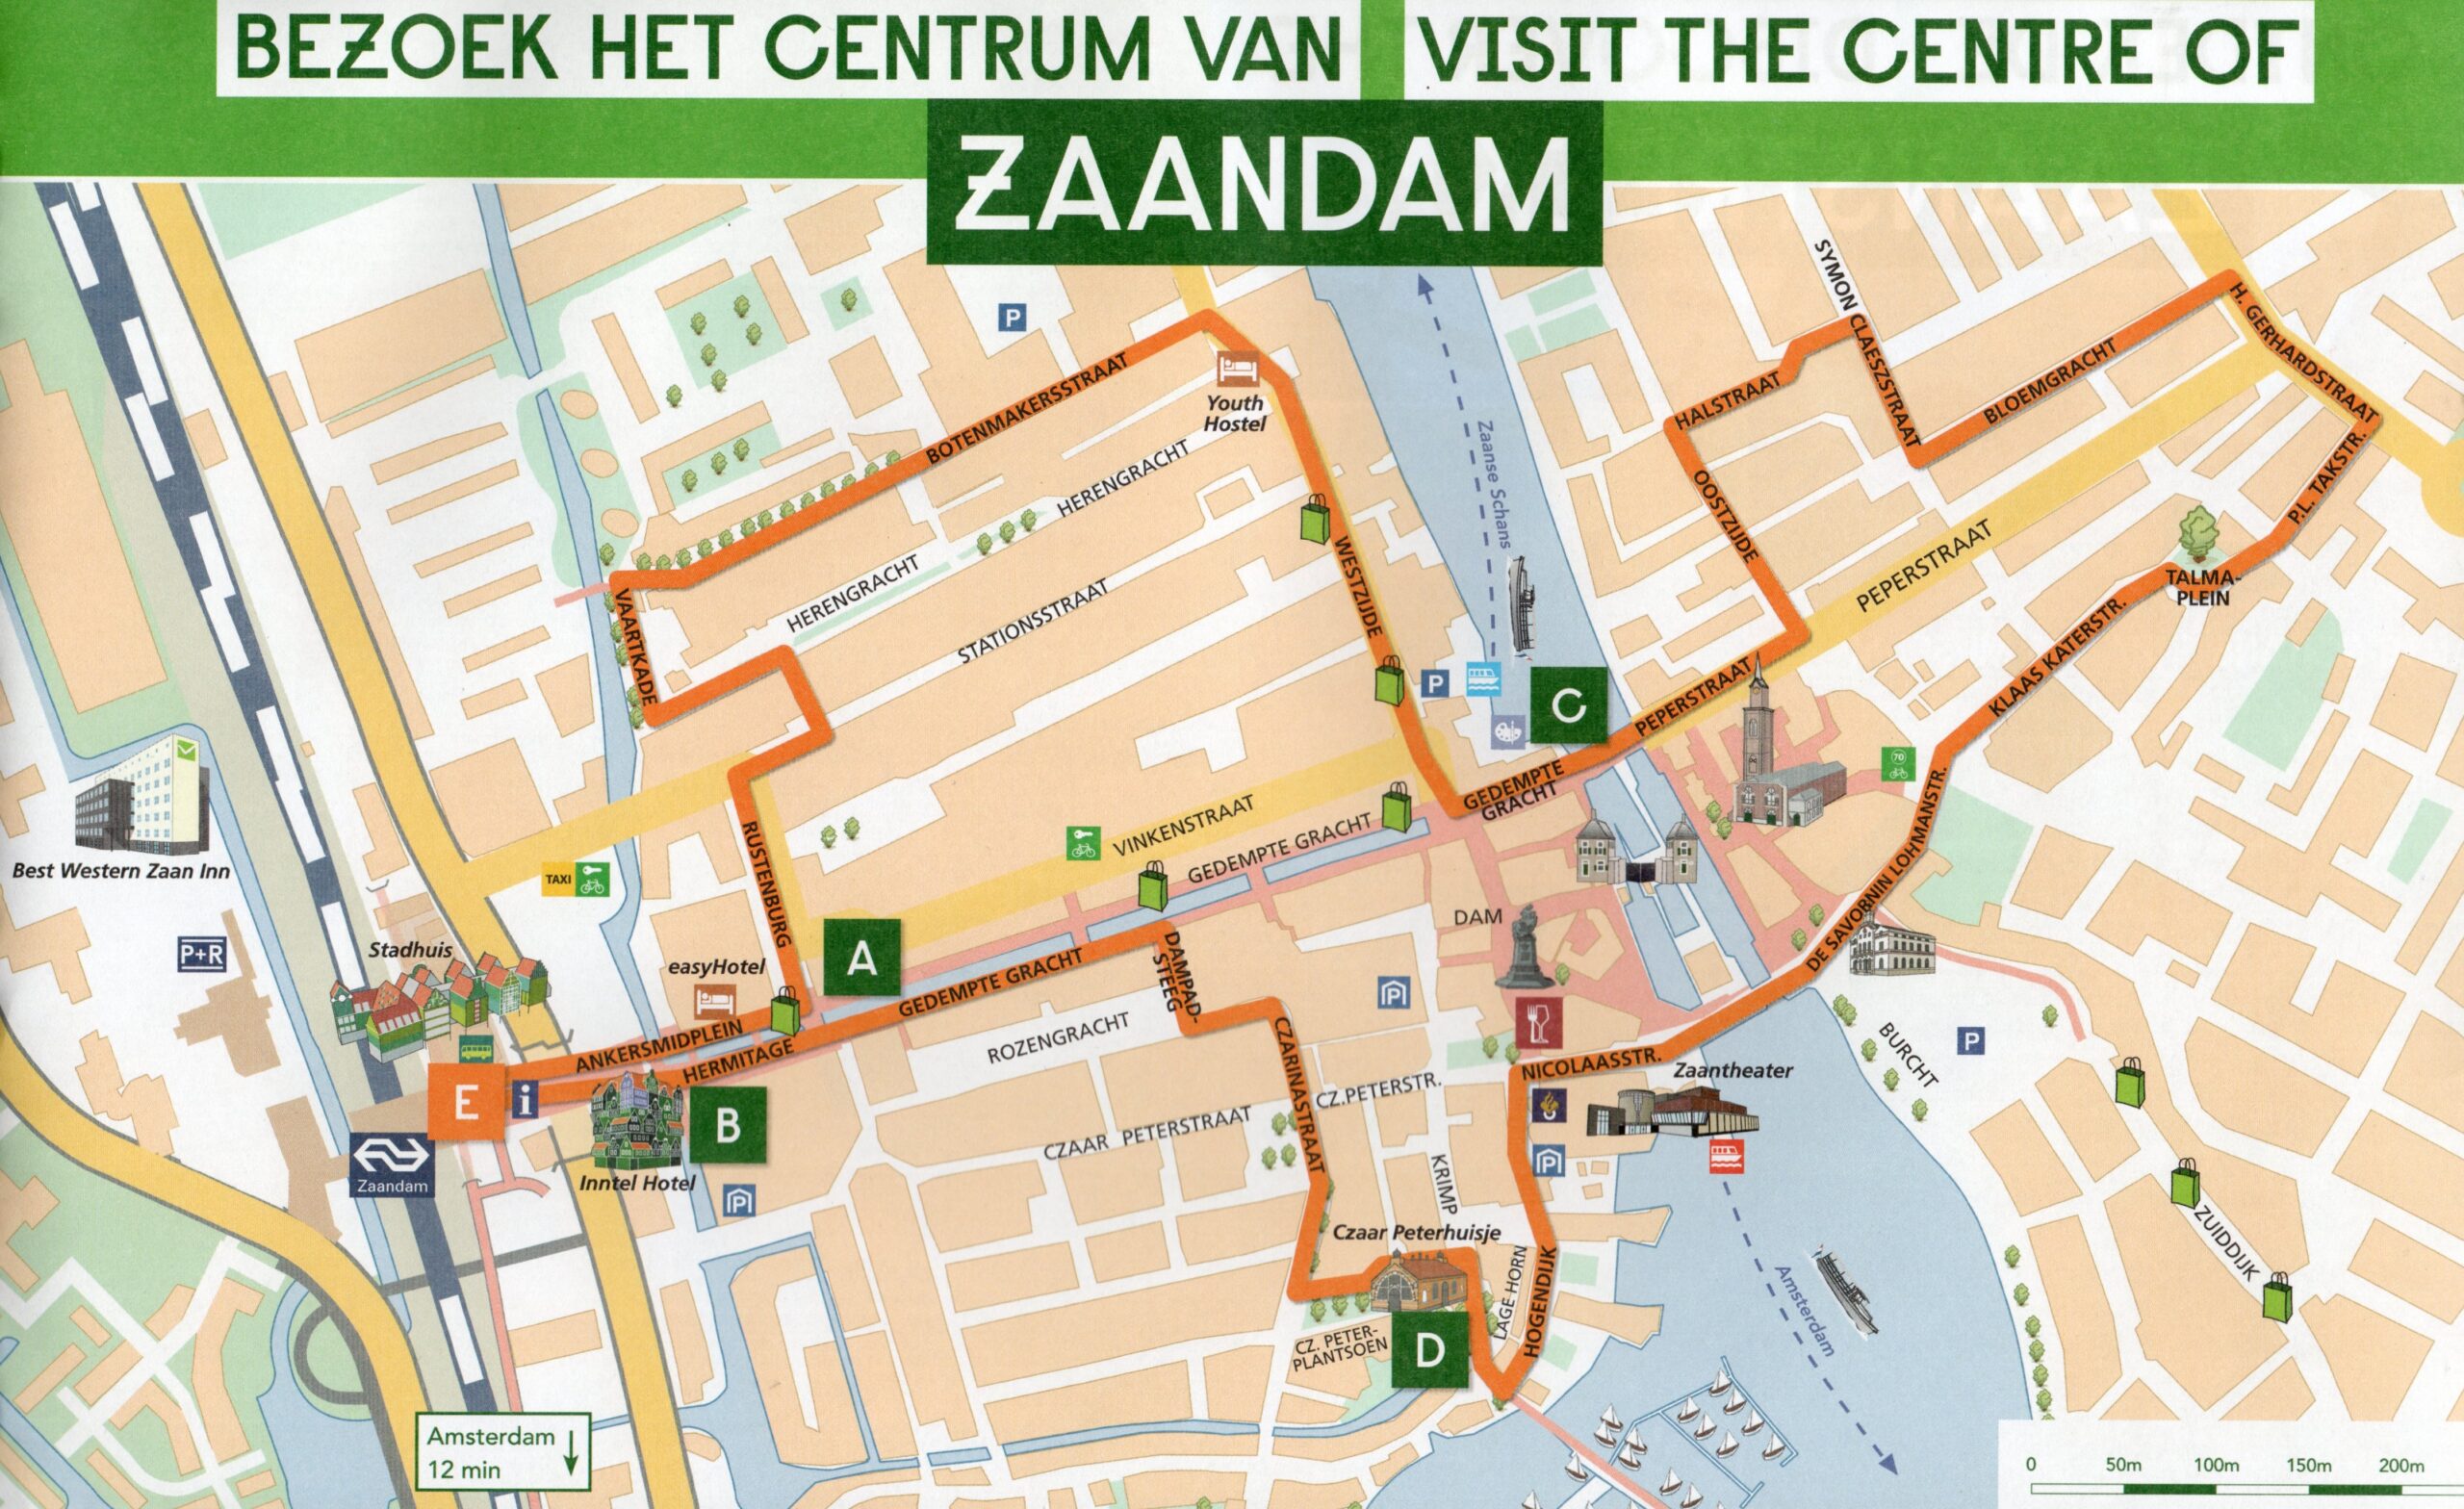 Bezoek het centrum van Zaandam